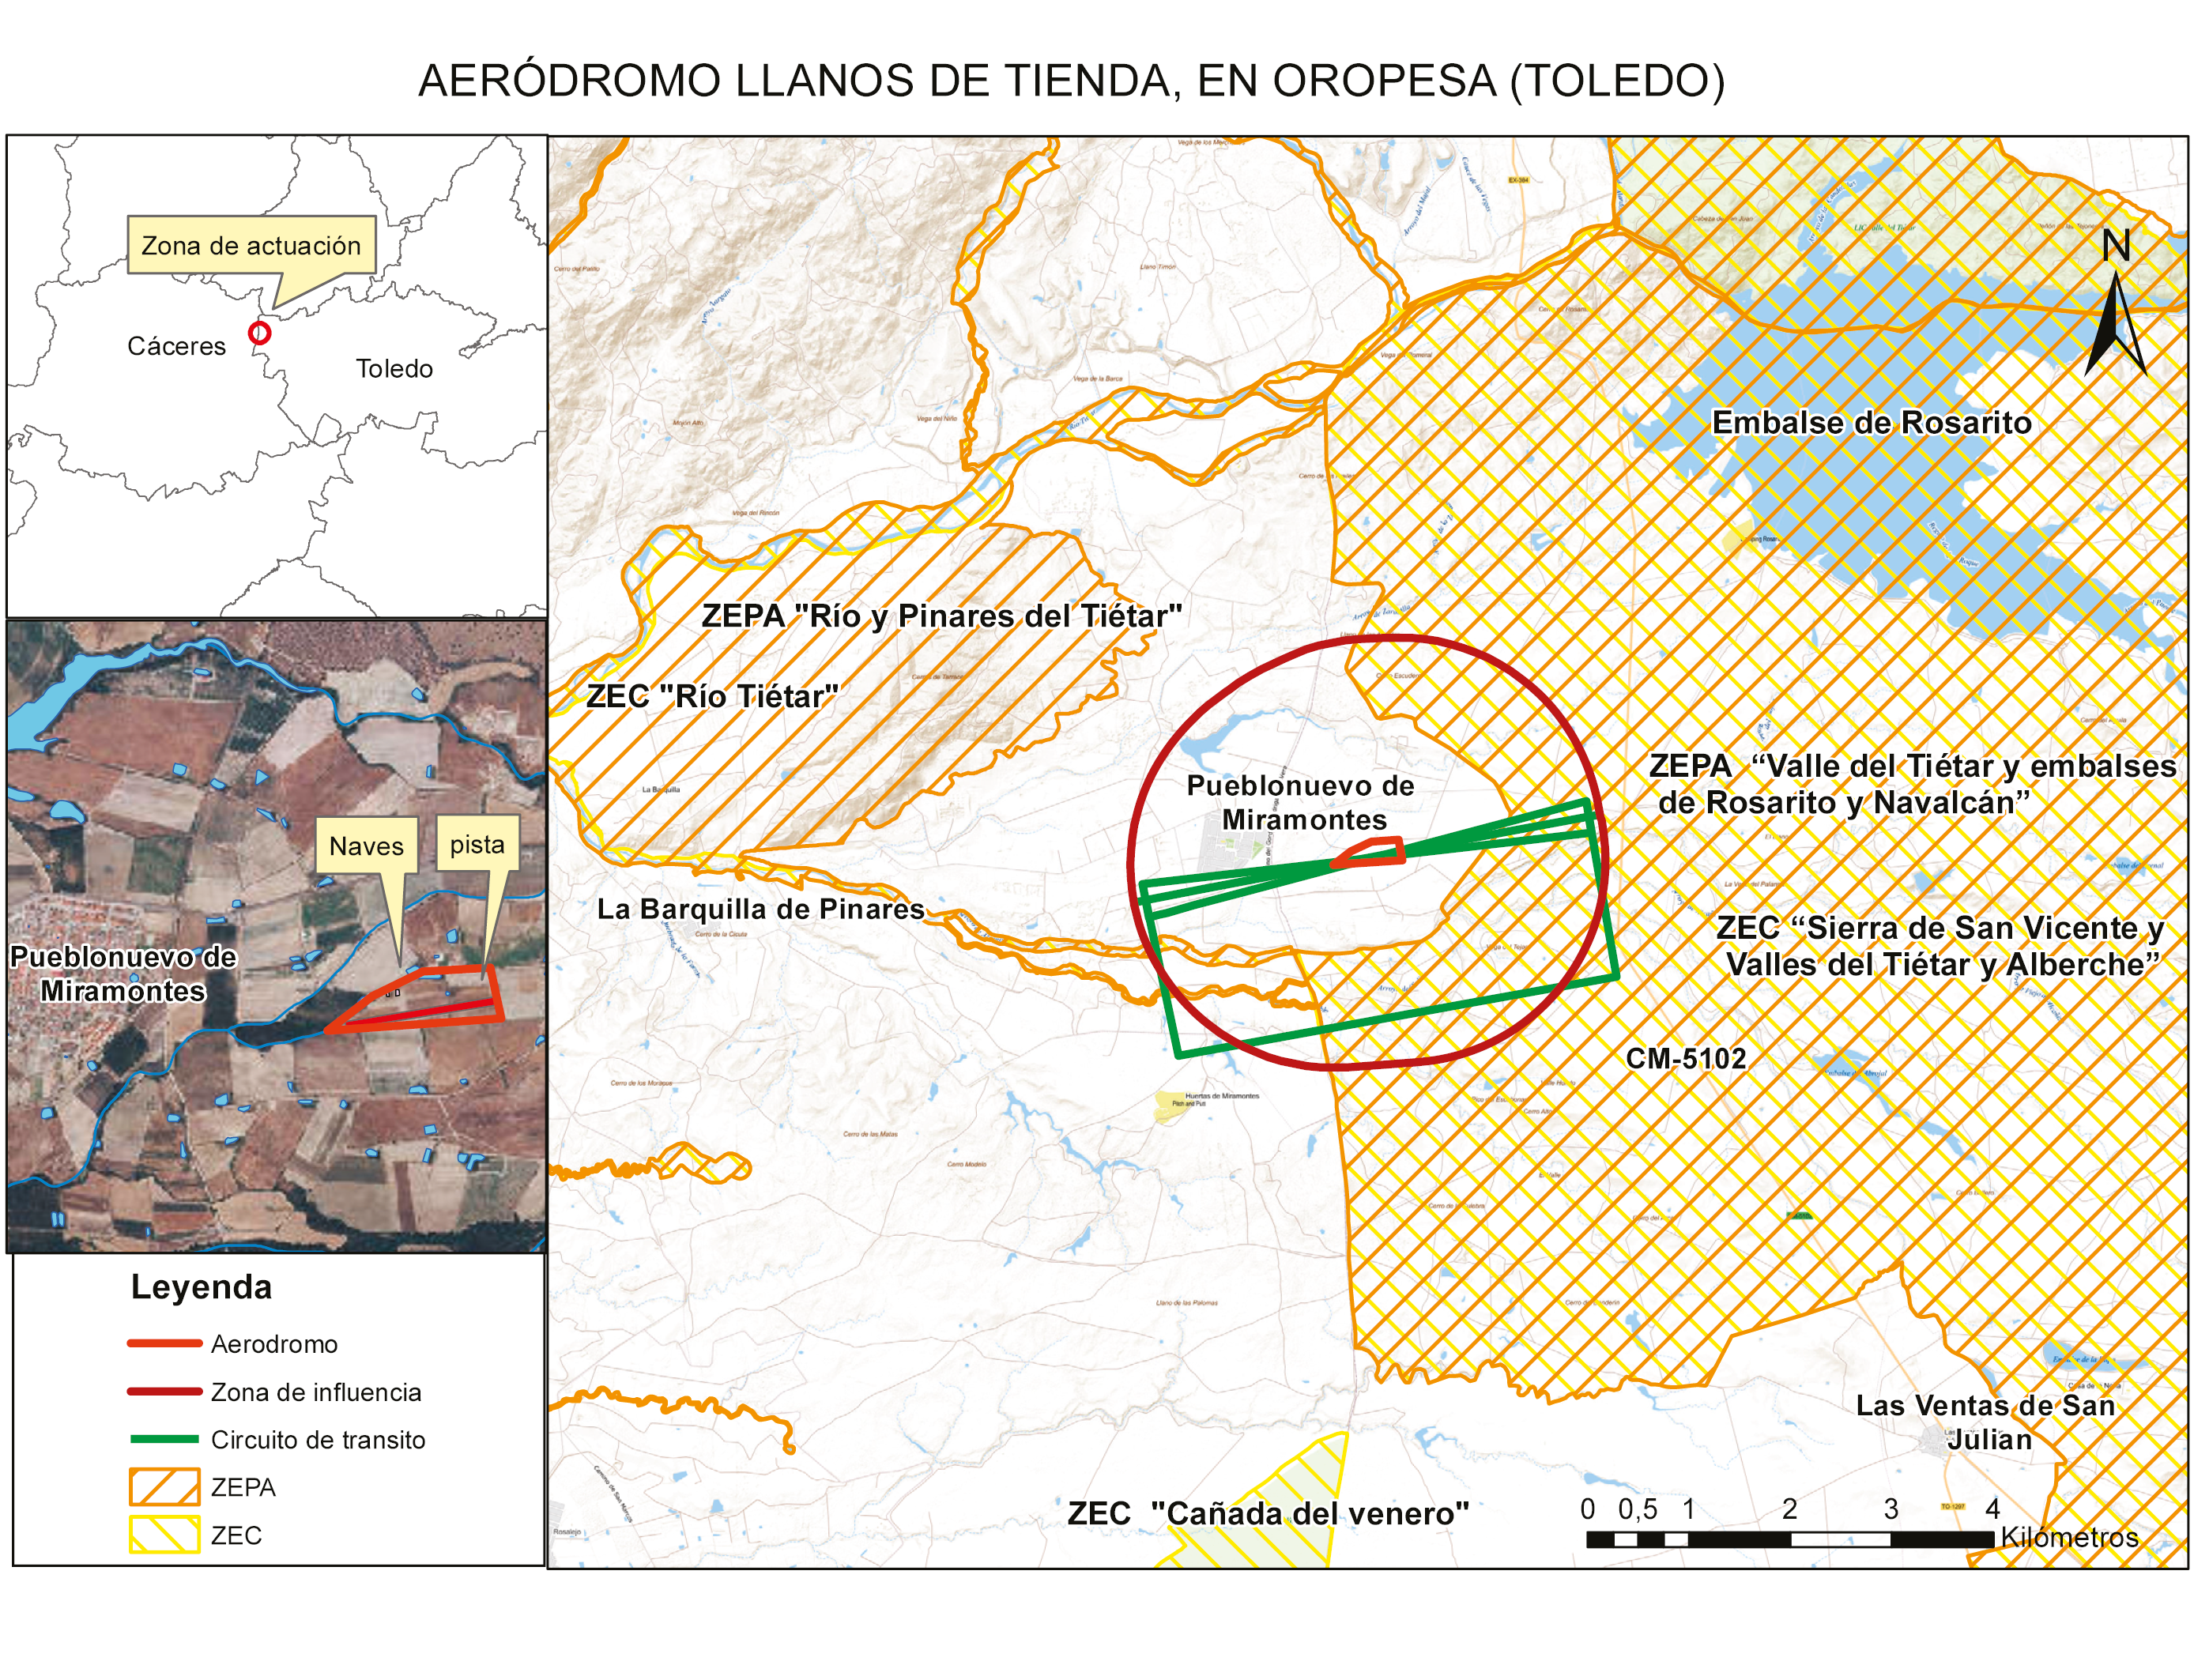 Aeródromo Llanos de Tienda, en Oropesa (Toledo). Pueblonuevo de Miramontes